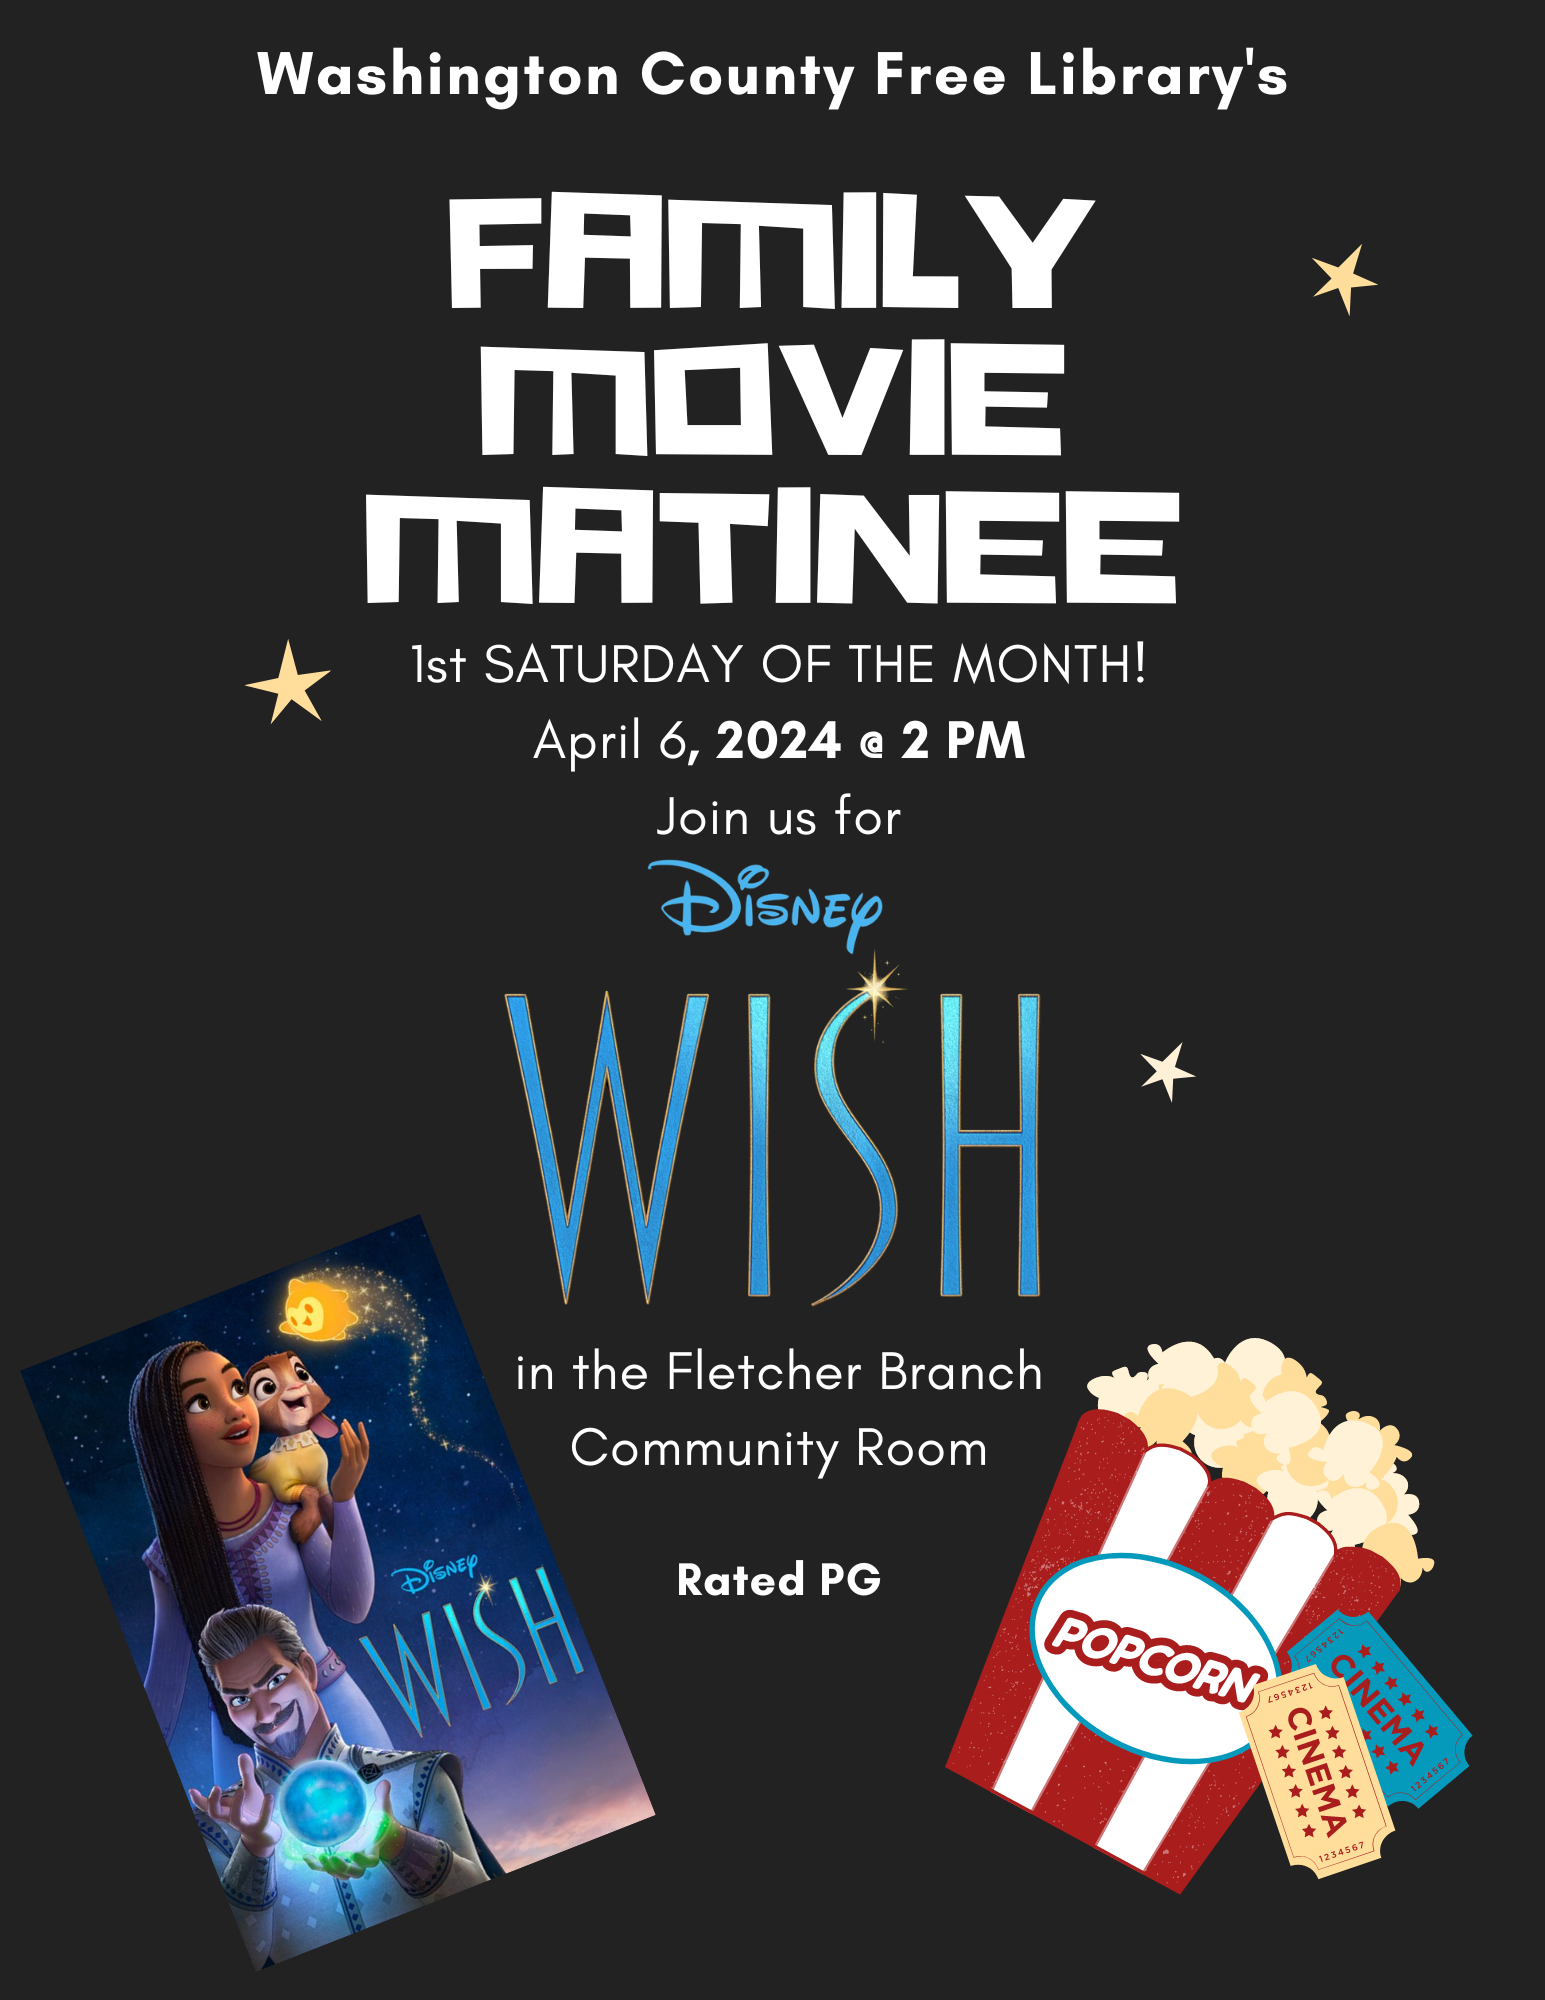 Free movie matinee--Disney's Wish!